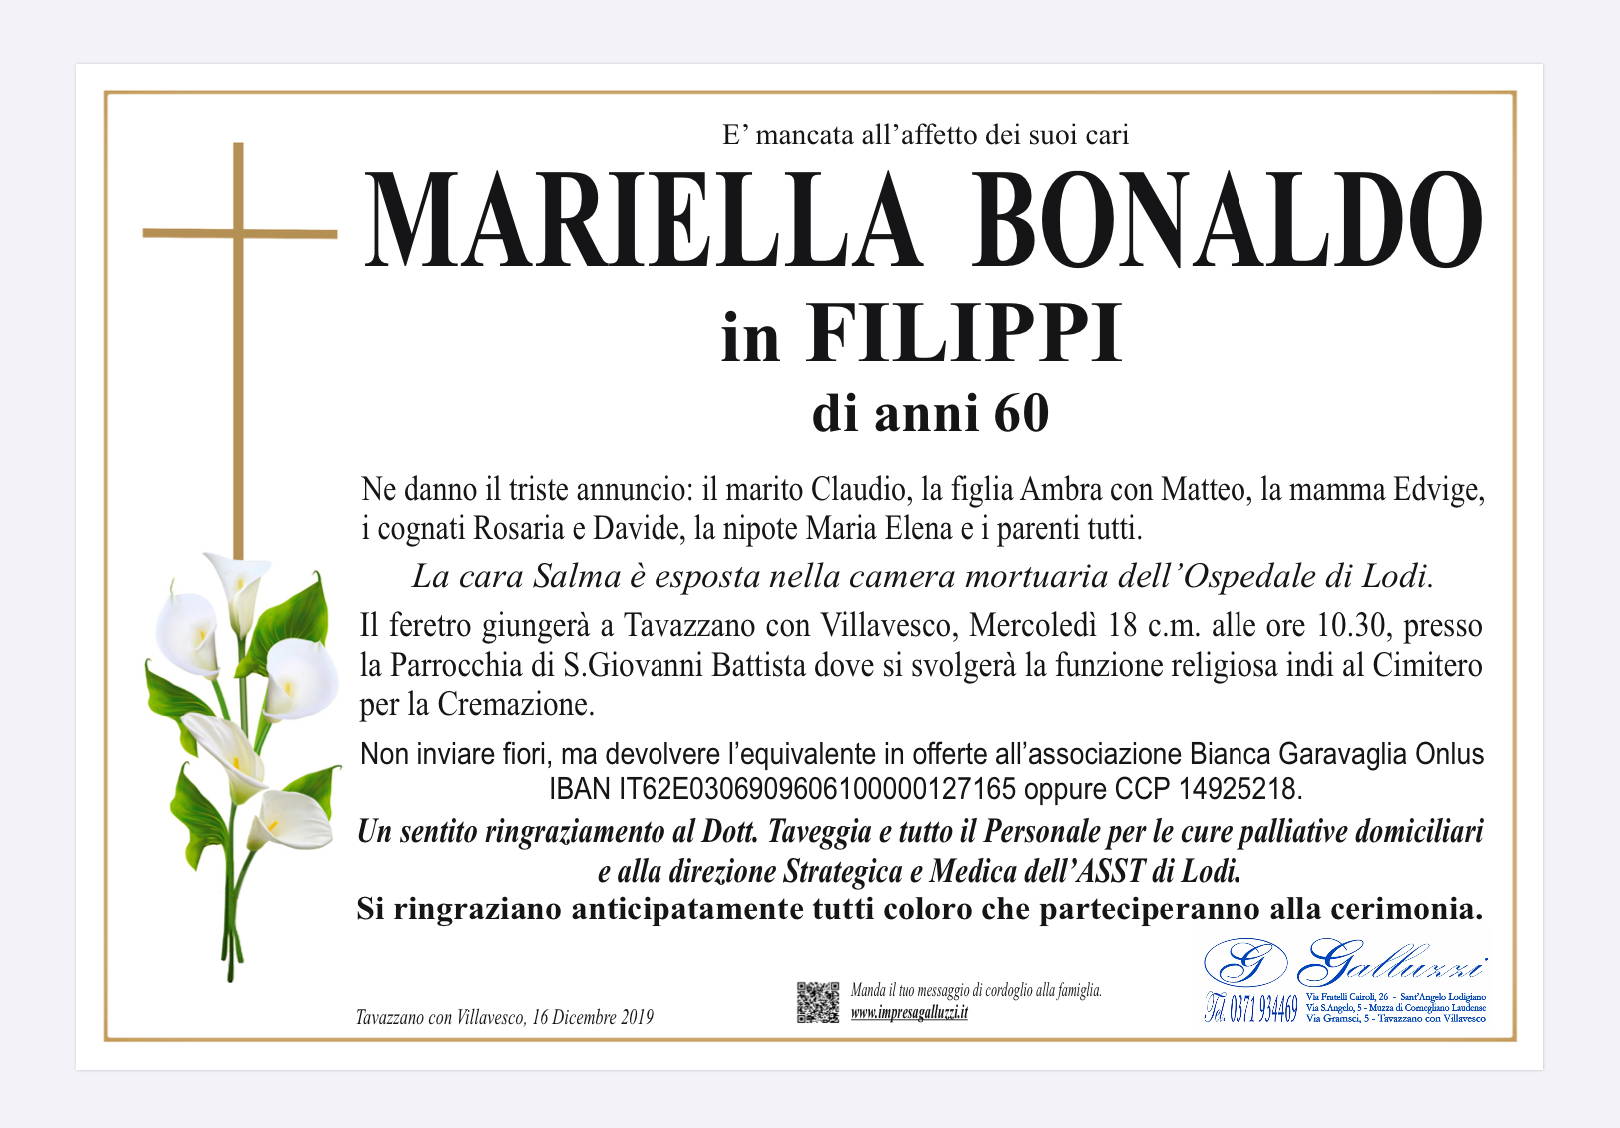 Mariella Bonaldo